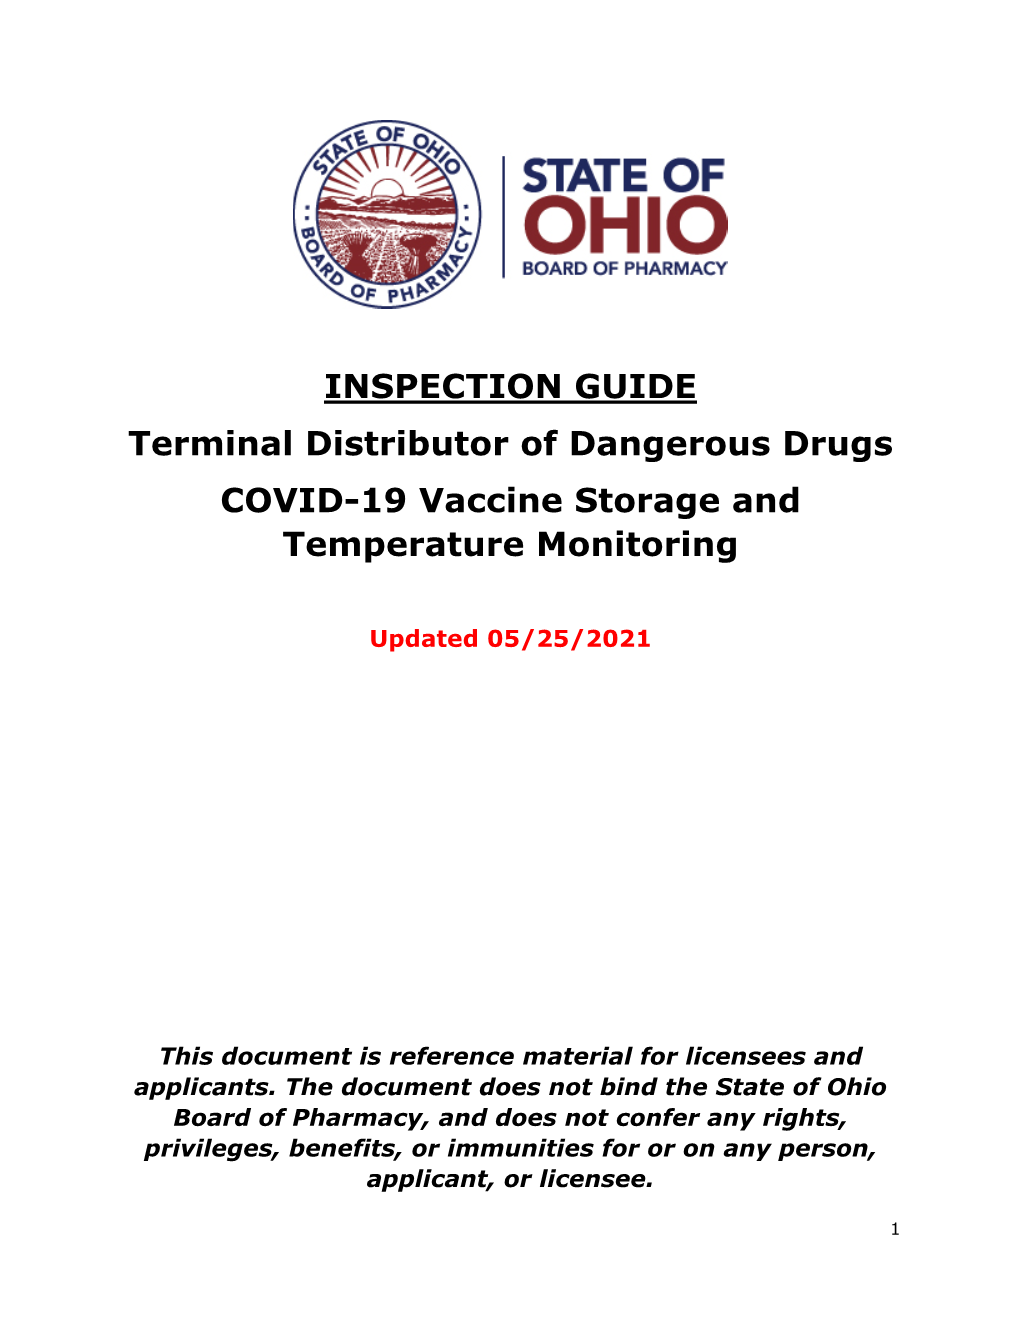 COVID-19 Vaccine Storage and Temperature Monitoring